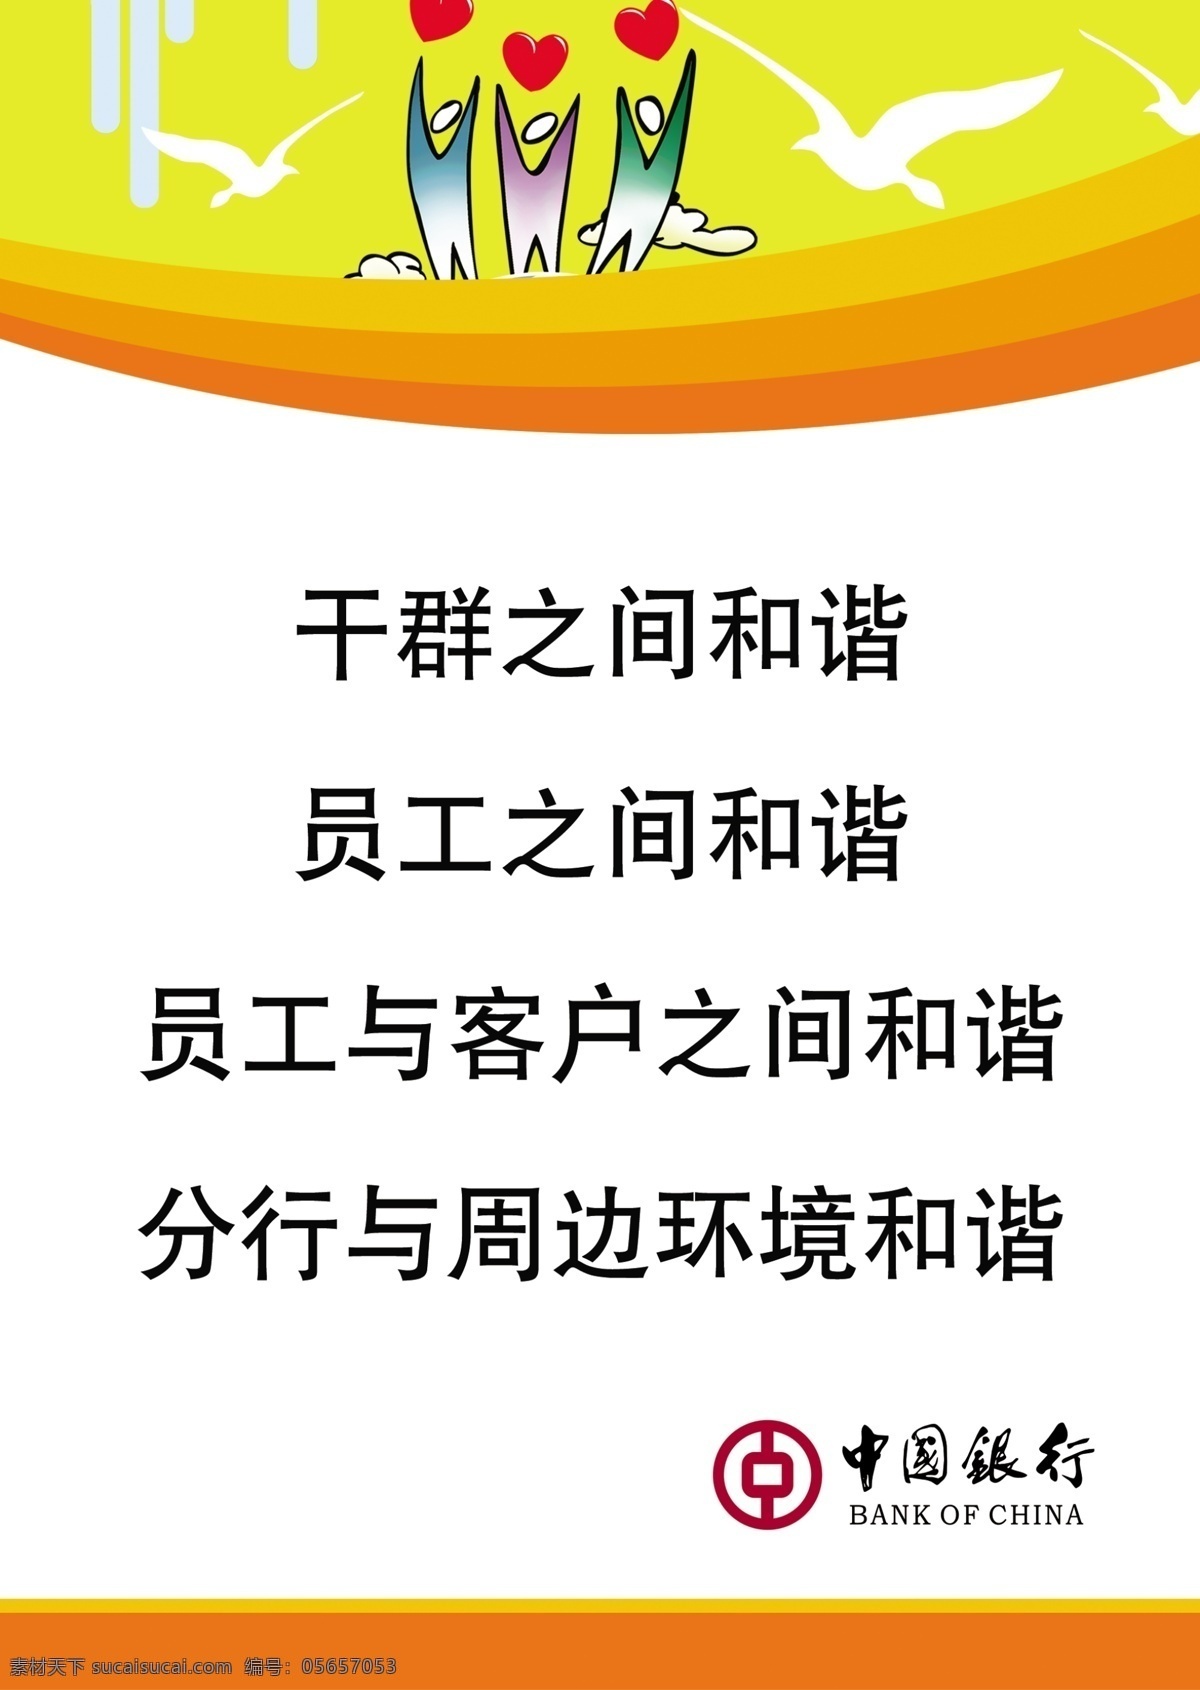 标语 鸽子 广告设计模板 心 源文件 展板 展板模板 中国银行 模板下载 中国银行展板 其他展板设计